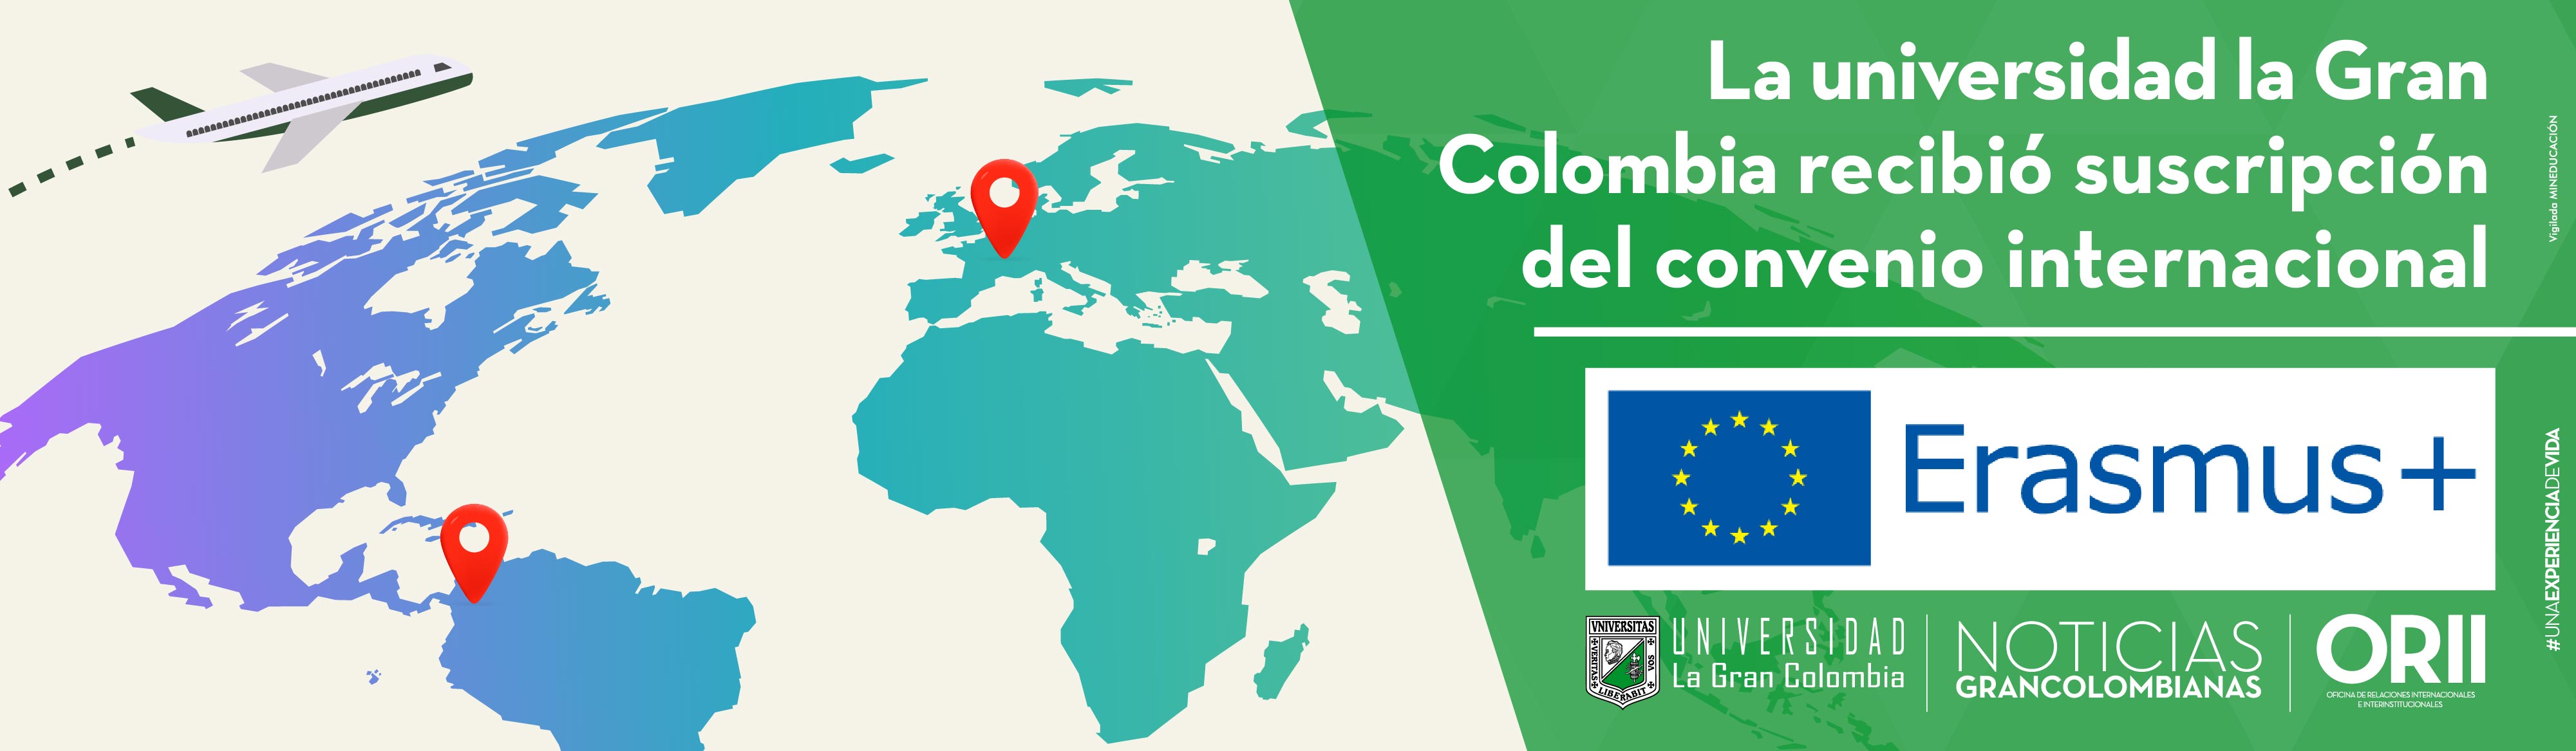 La Universidad La Gran Colombia recibió la suscripción del convenio internacional Erasmus +